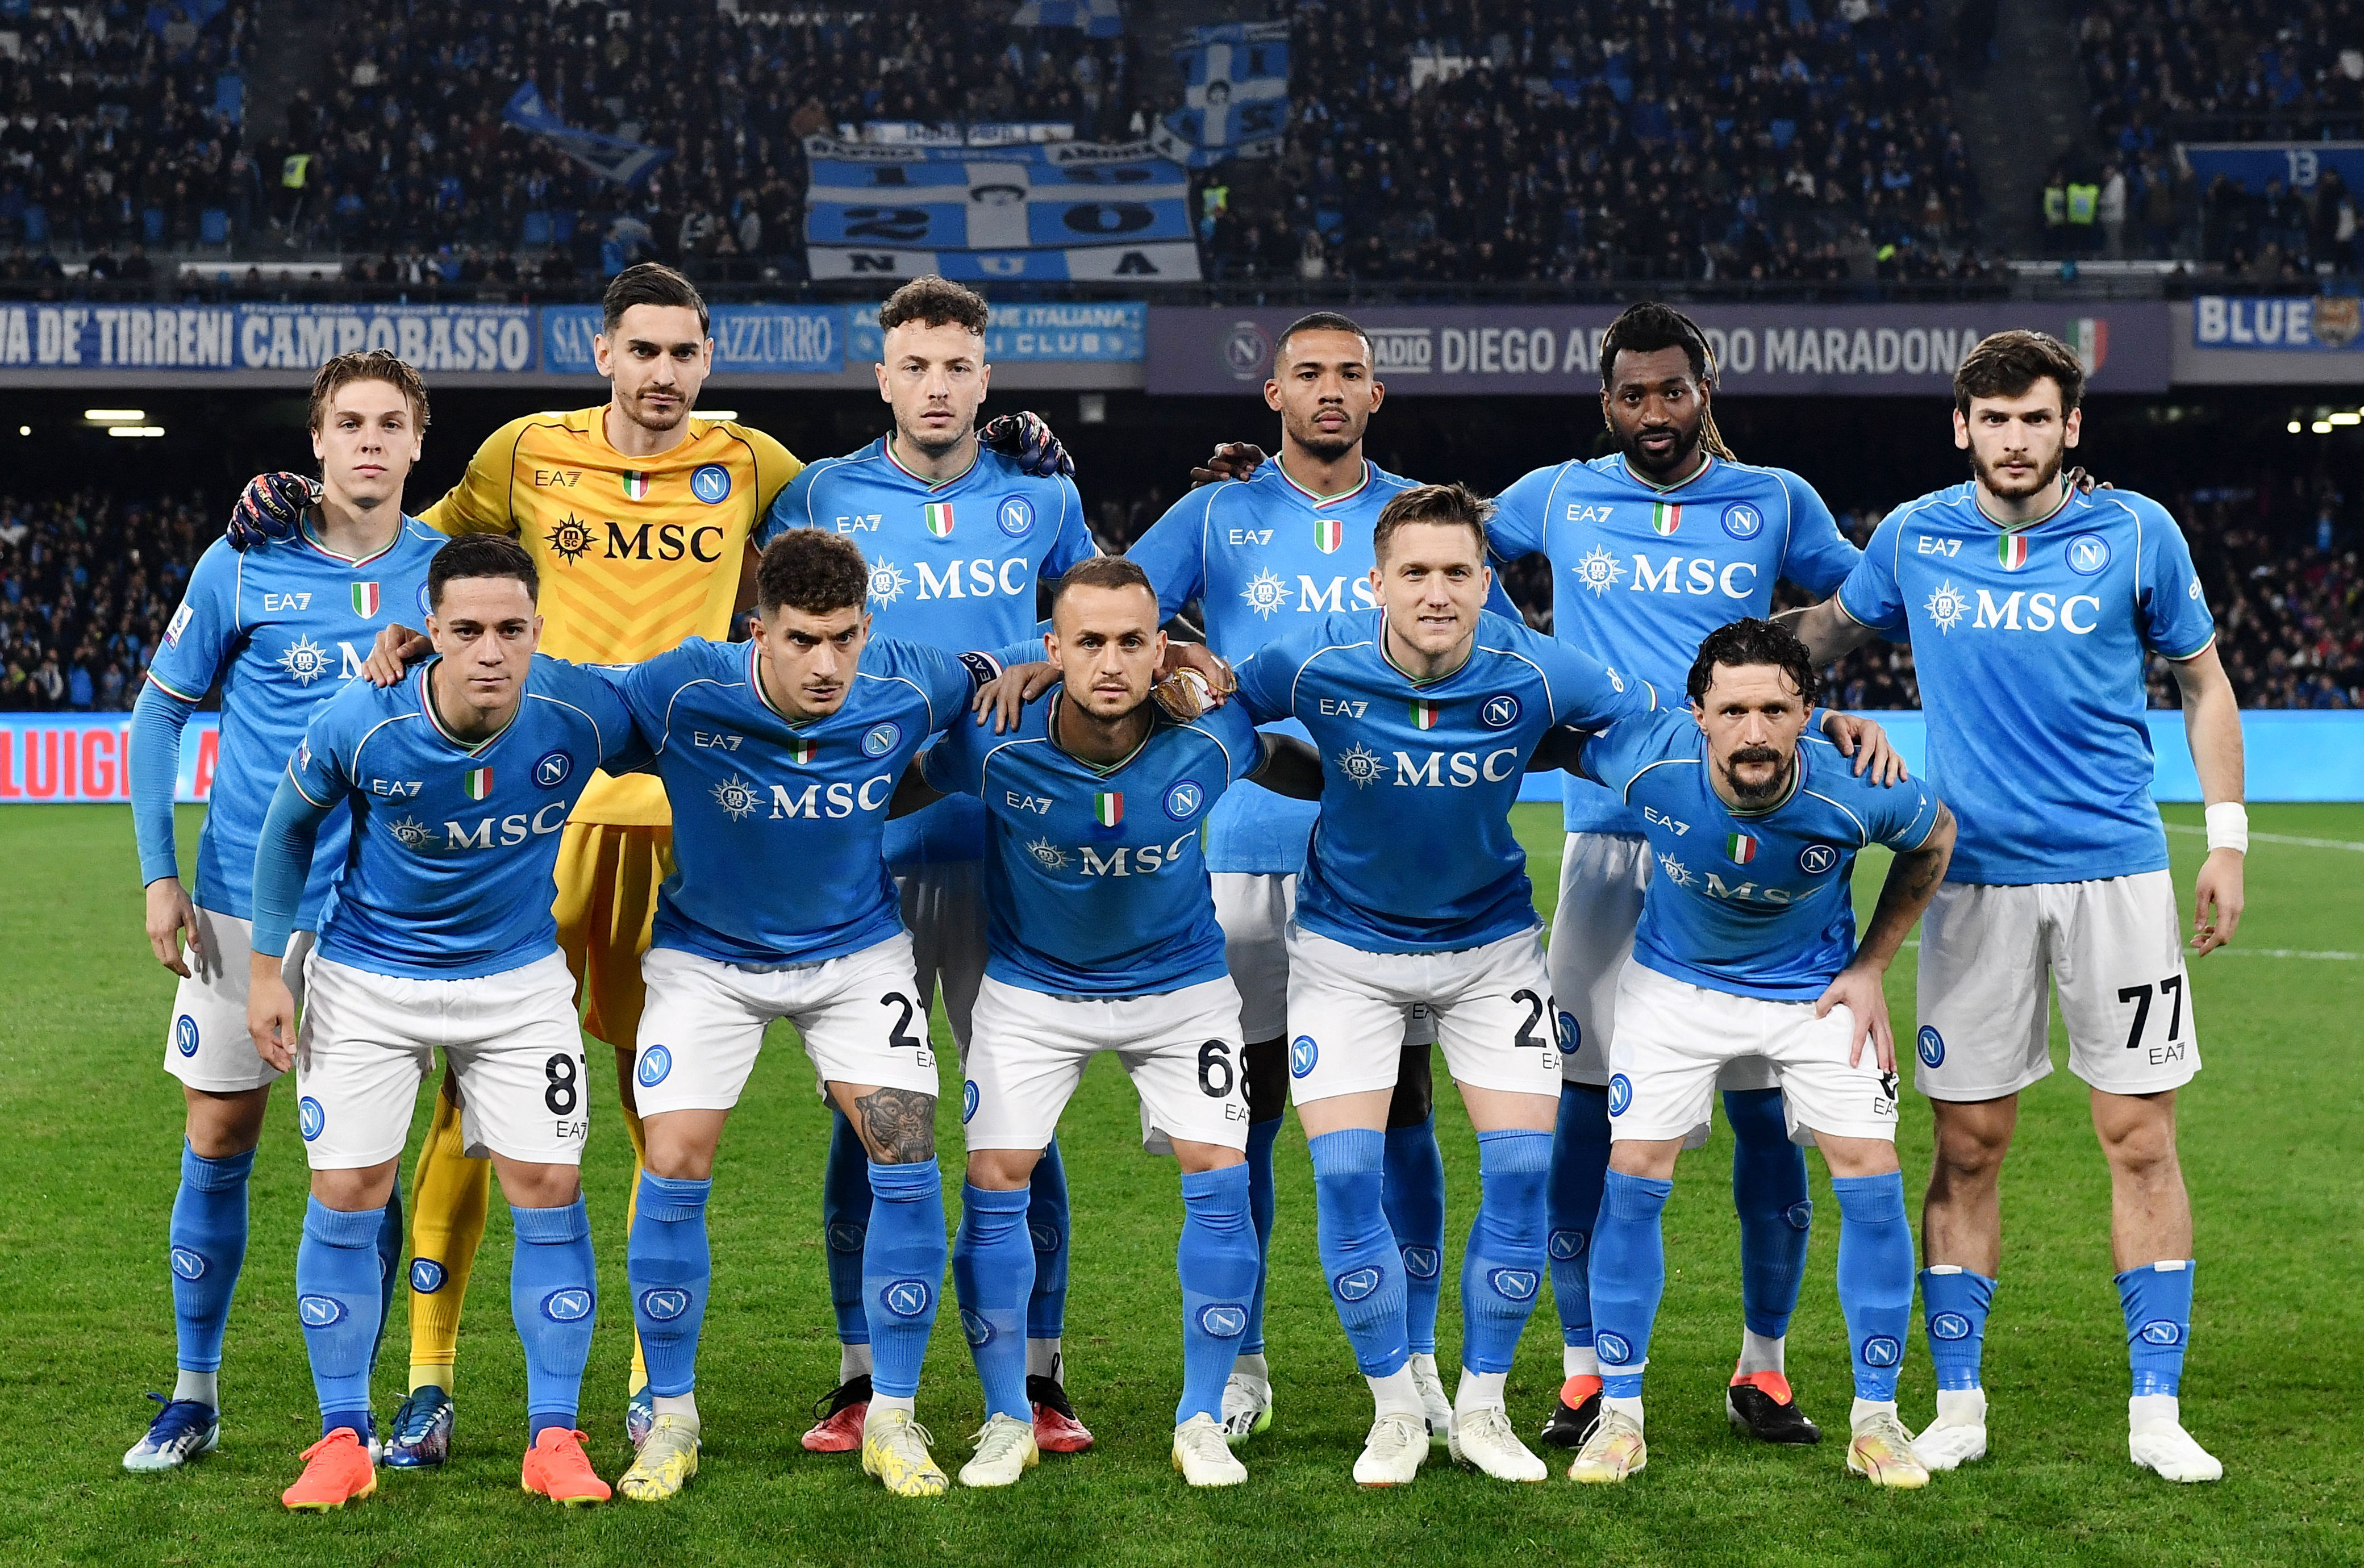 Serie A - Napoli v Monza